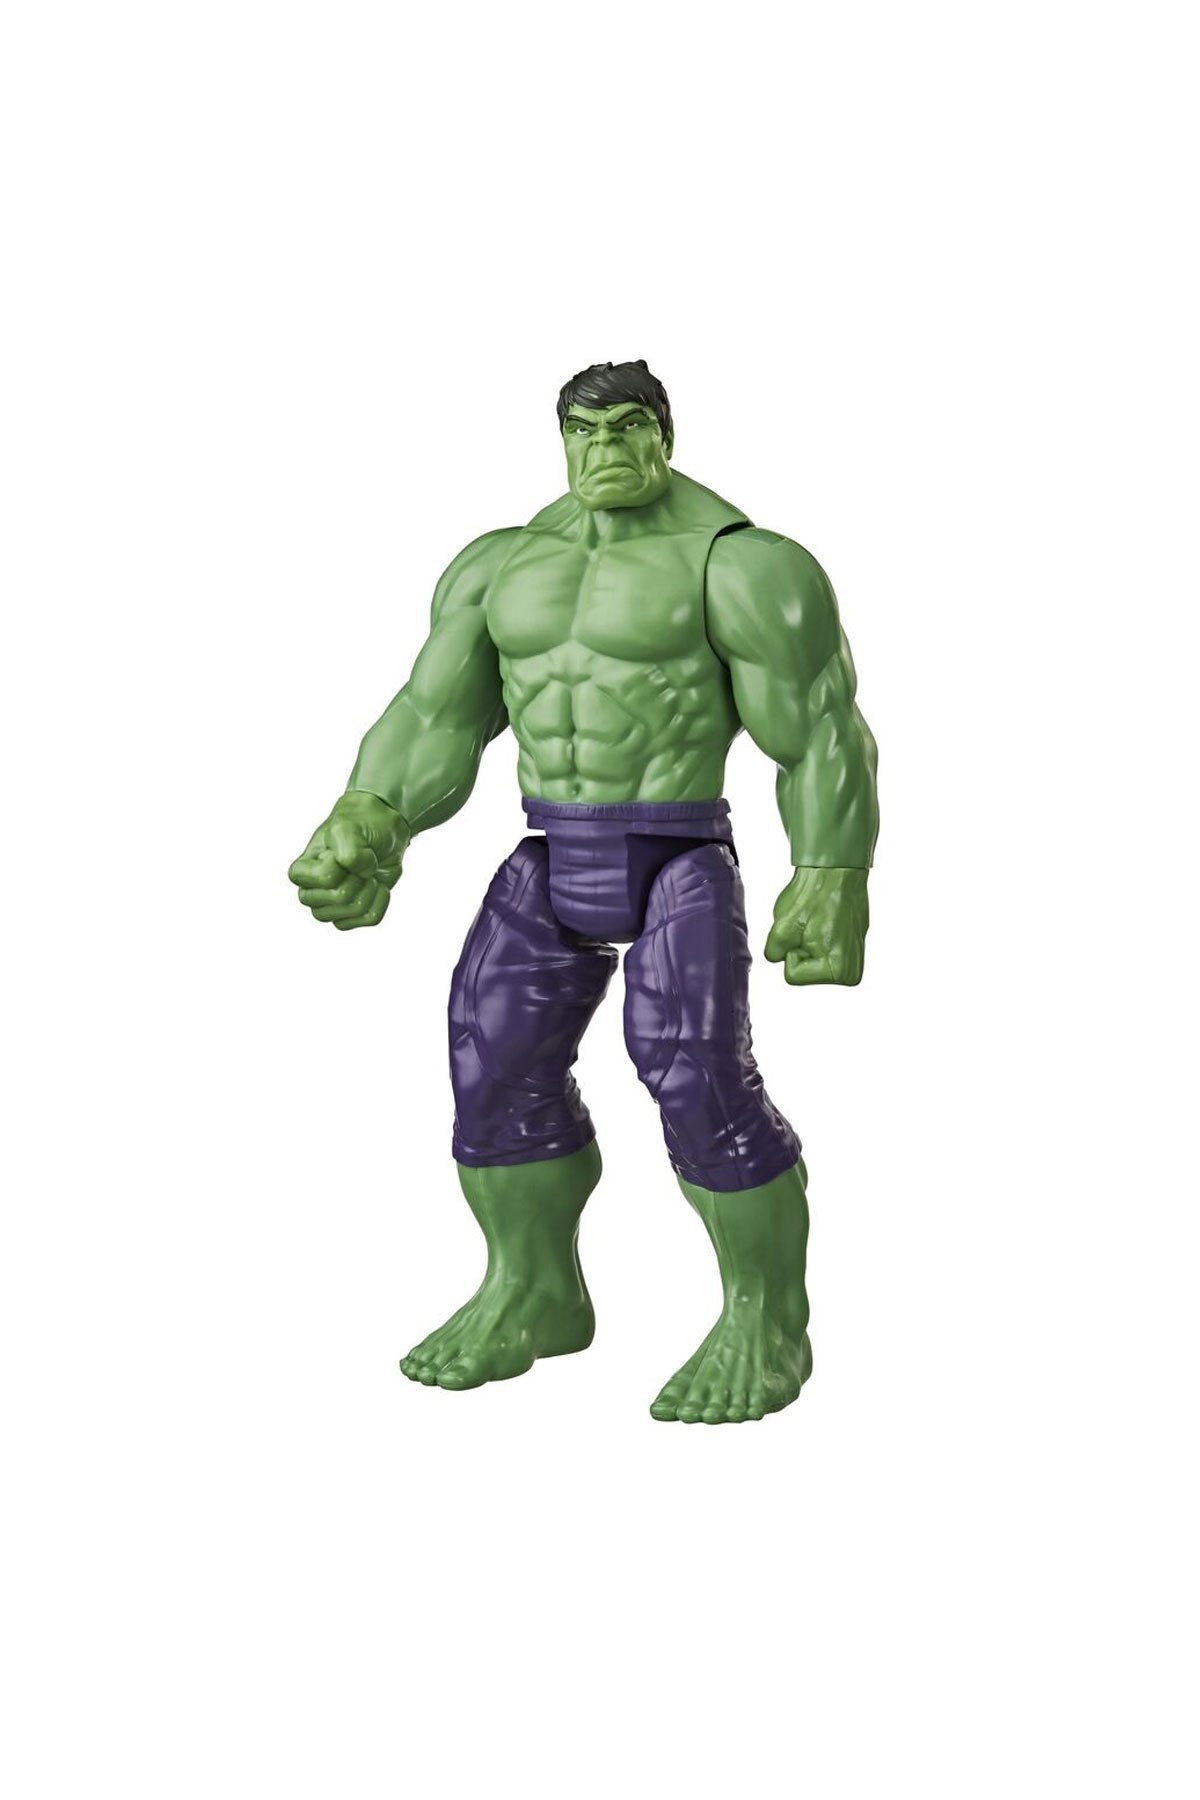 Avengers Titan Hero Hulk Özel Figür